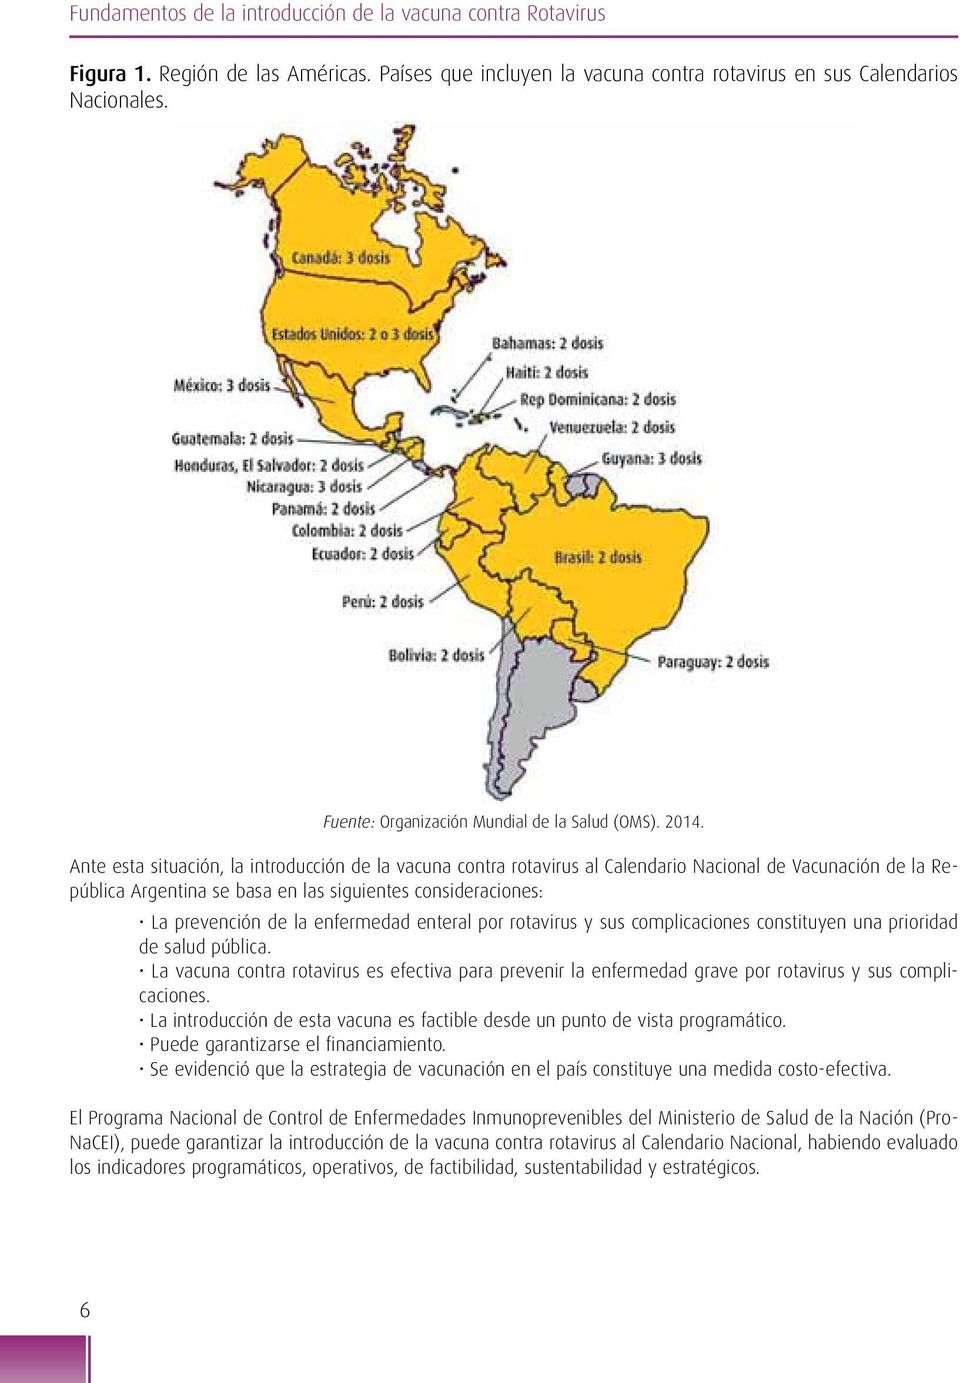 Ante esta situación, la introducción de la vacuna contra rotavirus al Calendario Nacional de Vacunación de la República Argentina se basa en las siguientes consideraciones: La prevención de la